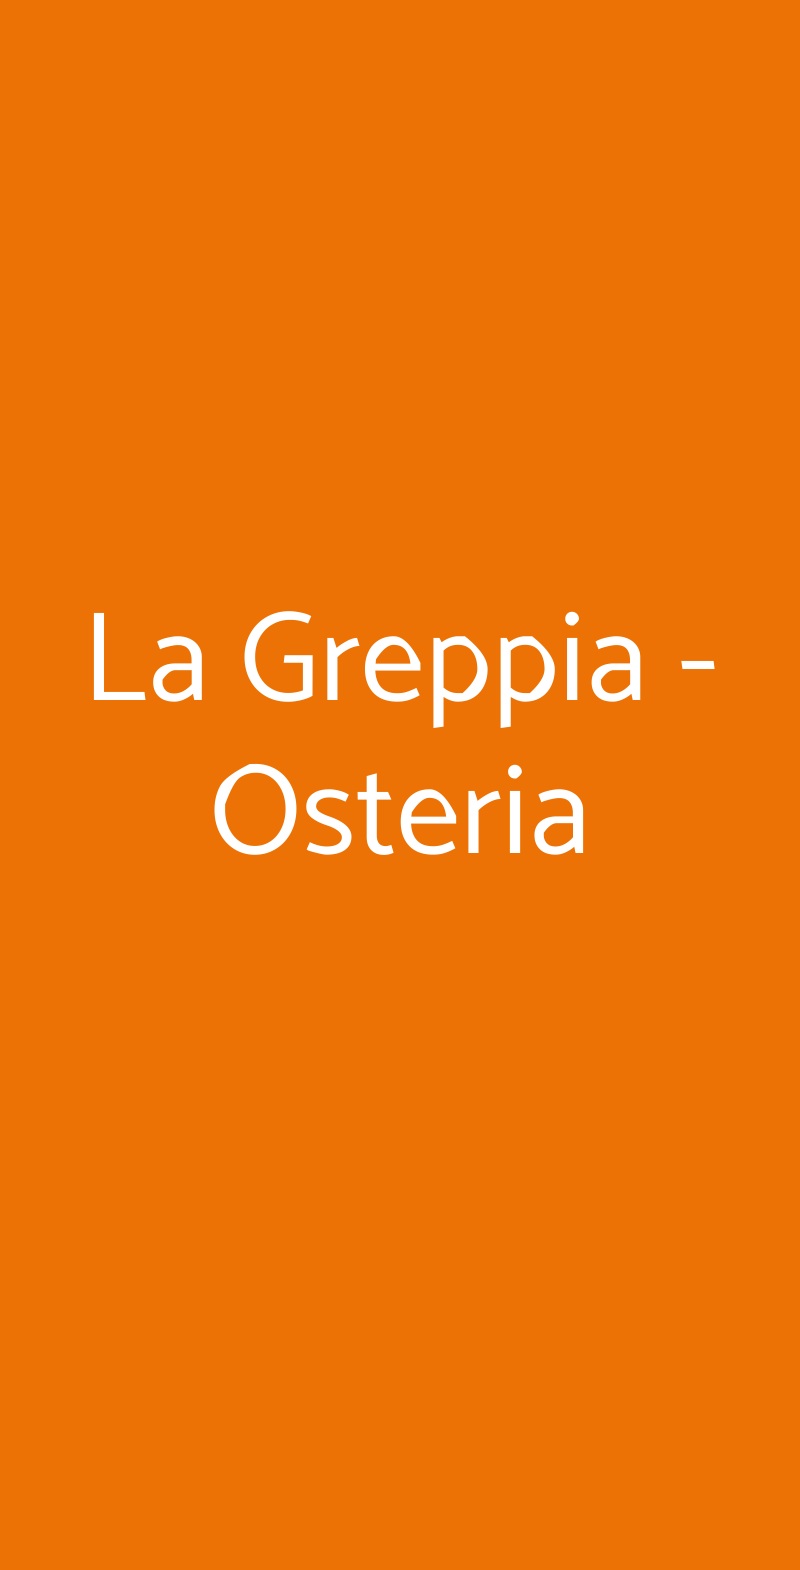 La Greppia - Osteria San Romano In Garfagnana menù 1 pagina